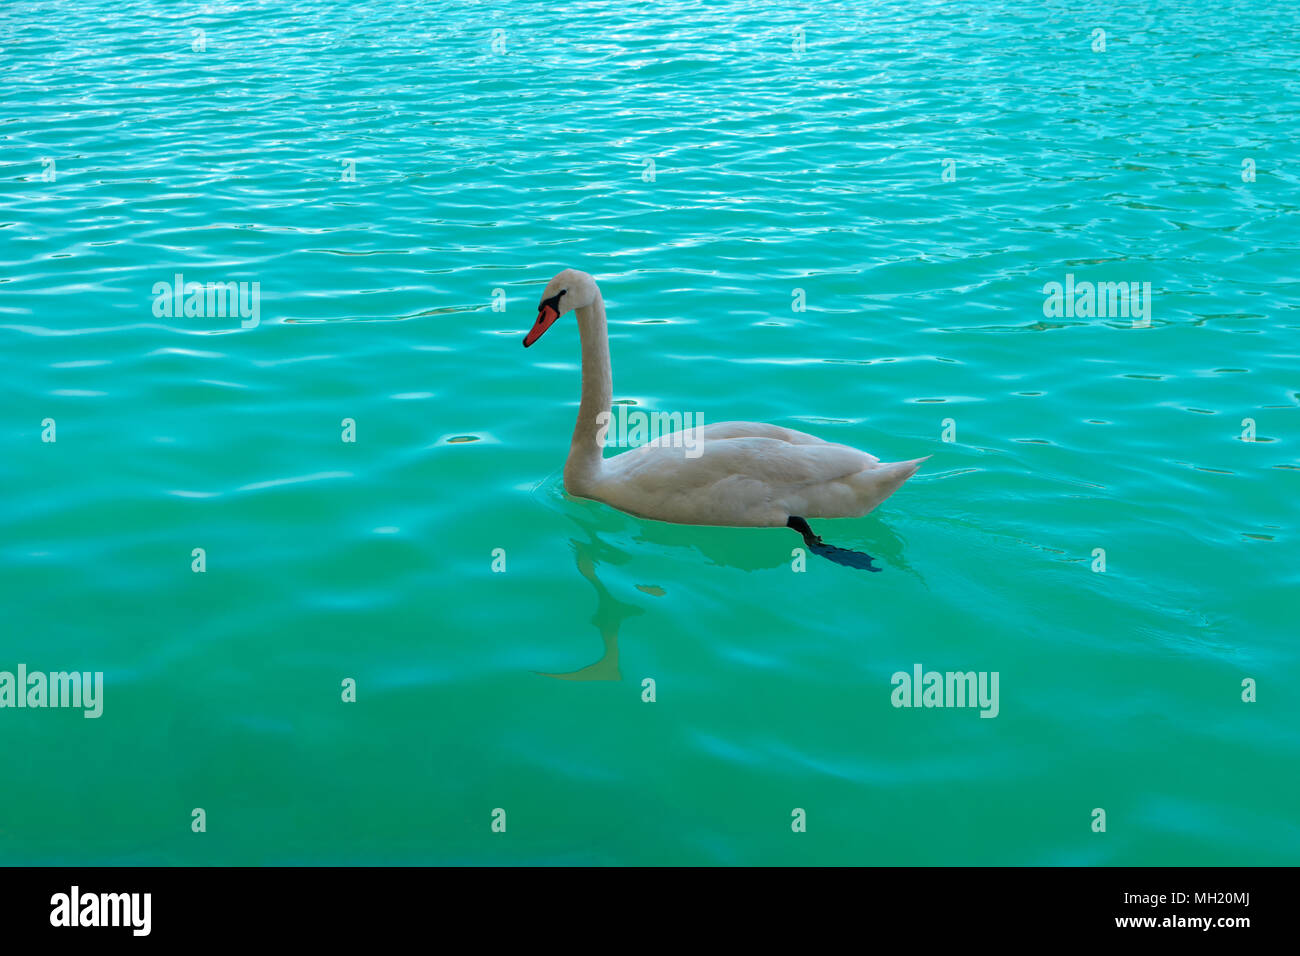 Schönen weißen Schwan Schwimmen im See von Bled, Slowenien, Europa. Romantische Landschaft. Cygnus. Profil von Weißen Höckerschwan auf klaren türkisfarbenen Wasser des Blauen l Stockfoto